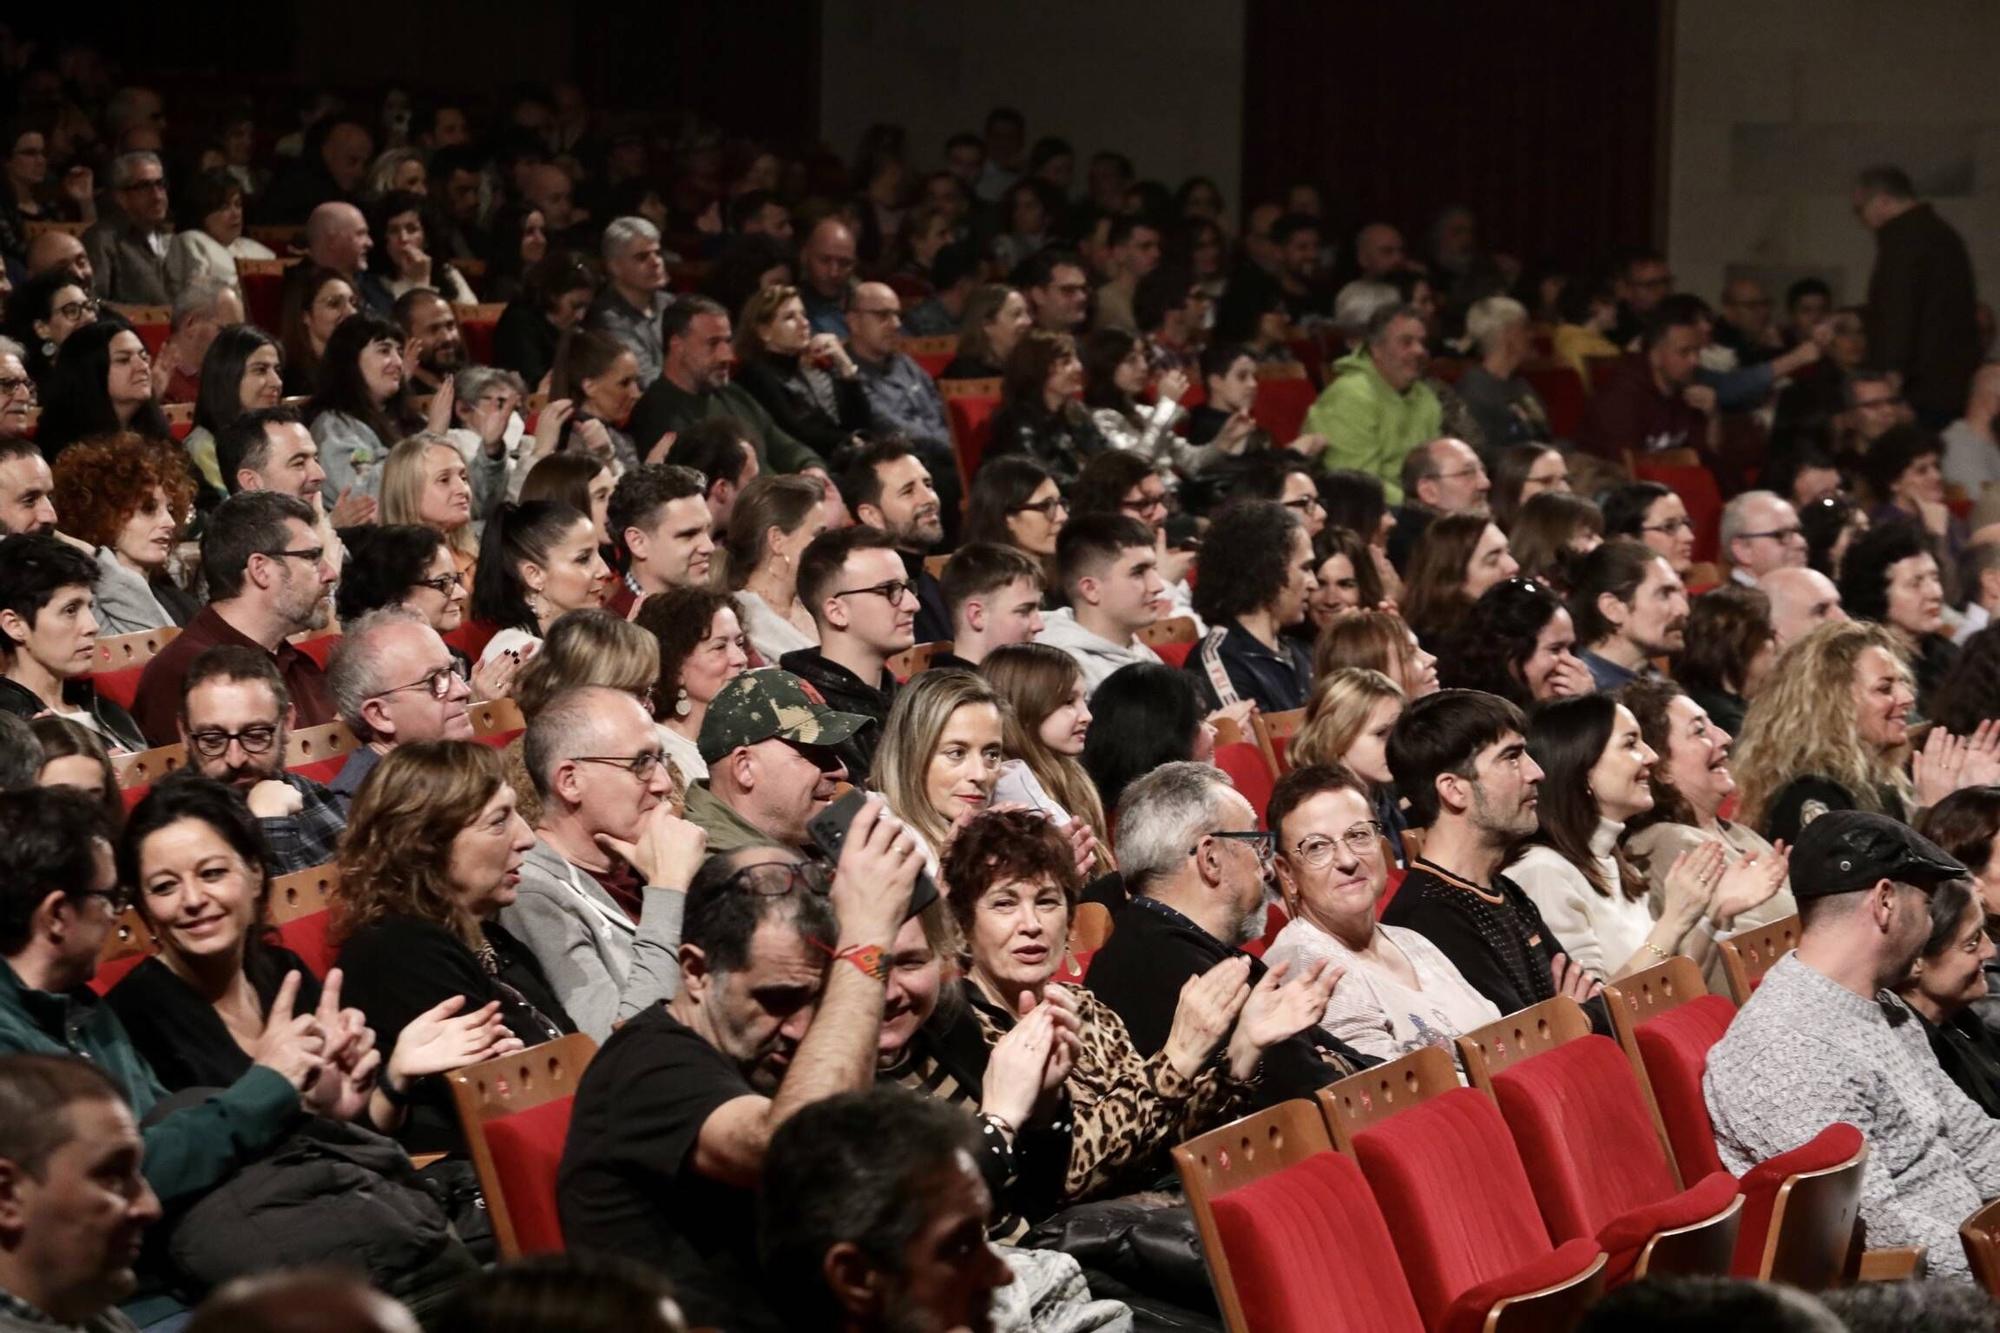 El concierto de Coque Malla en Gijón, en imágenes